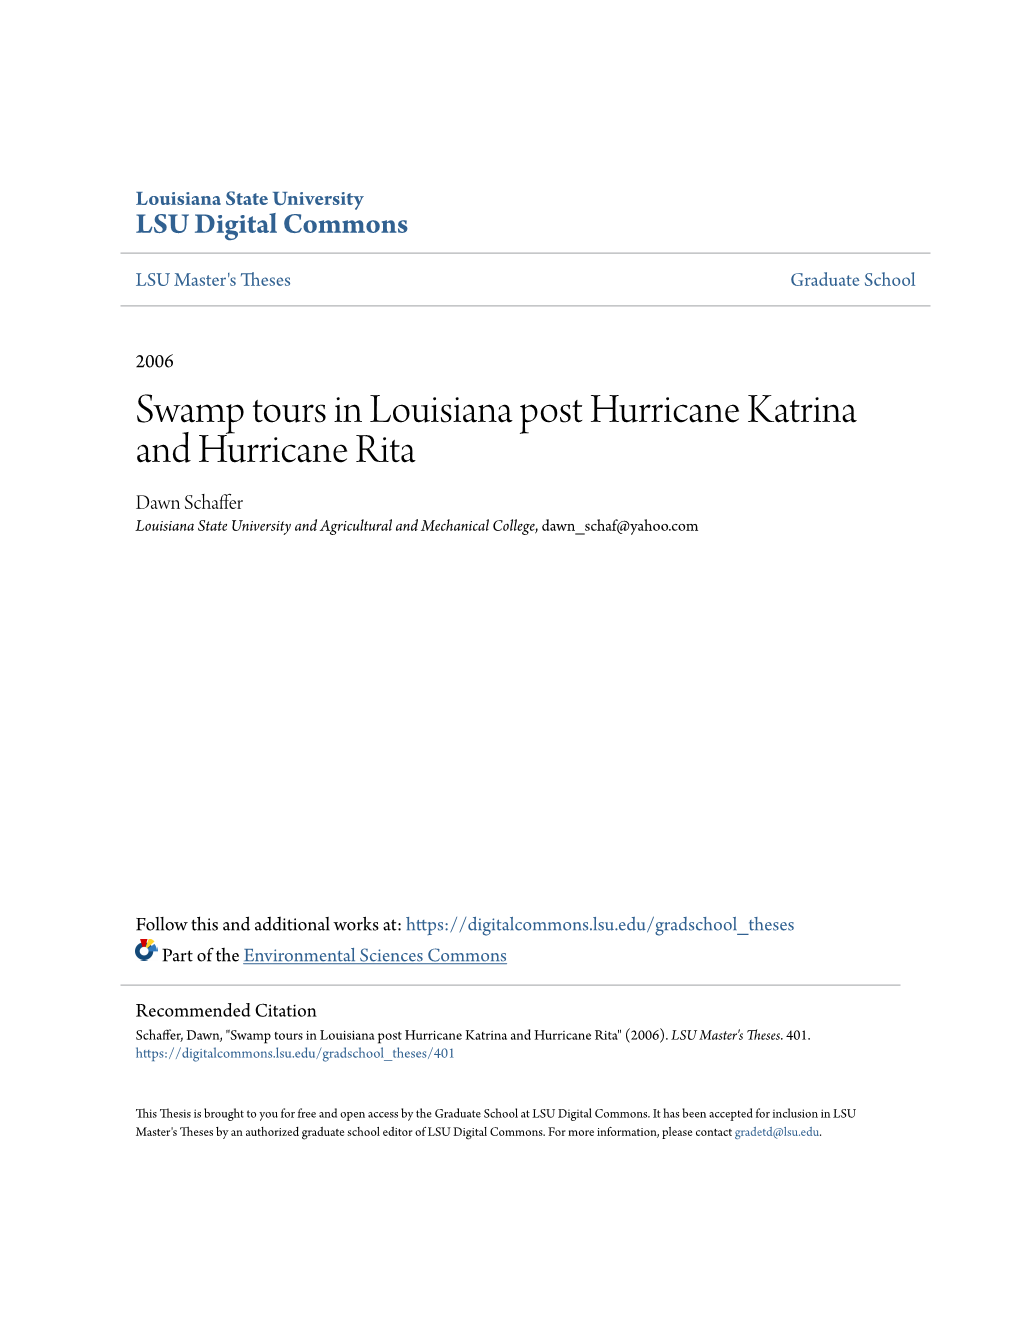 Swamp Tours in Louisiana Post Hurricane Katrina and Hurricane Rita